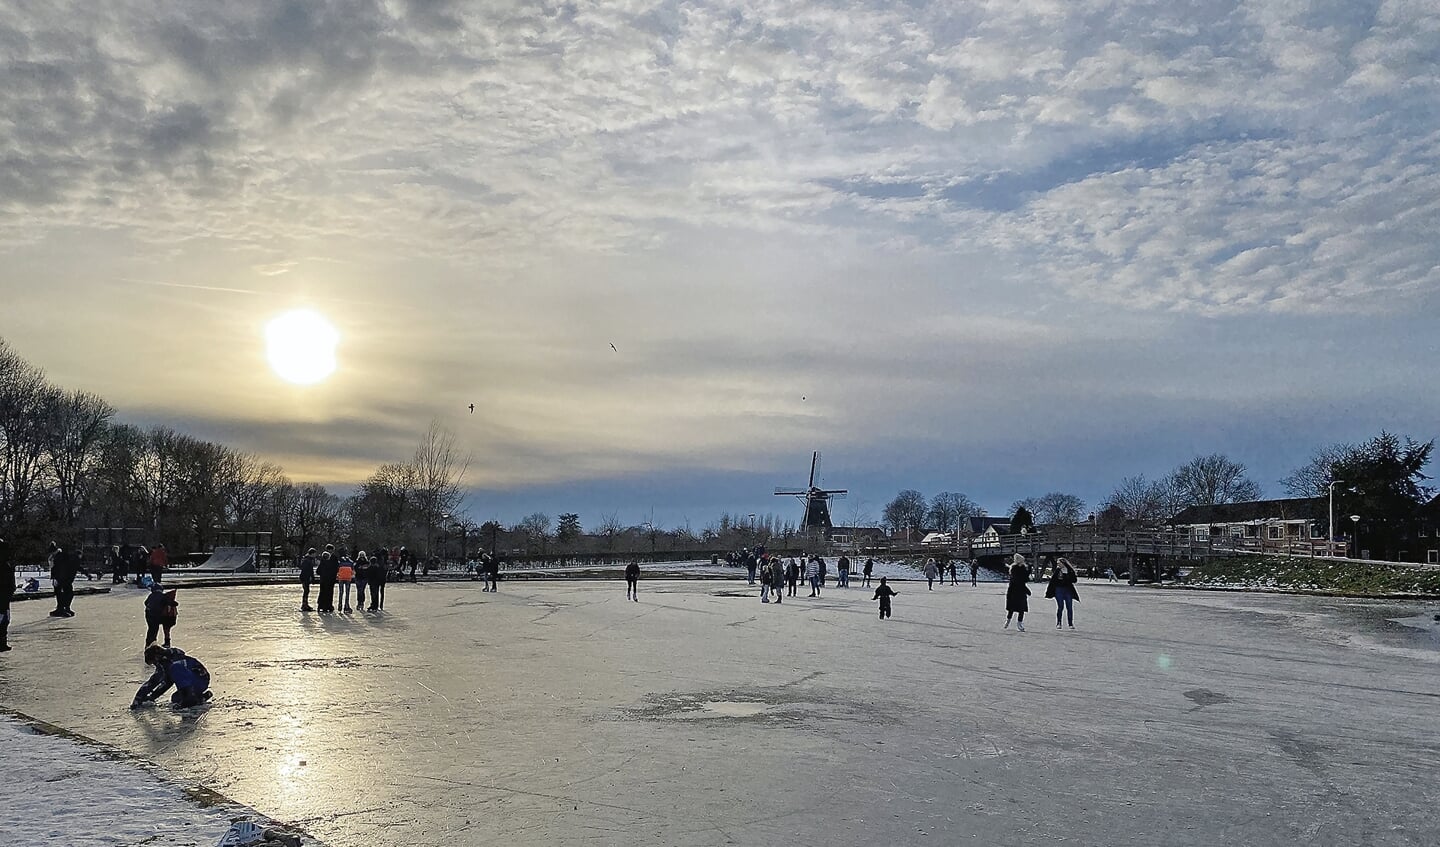 Ook al trad de dooi al in, er werd nog flink genoten van het schaatsen in het Stadspark in Montfoort.